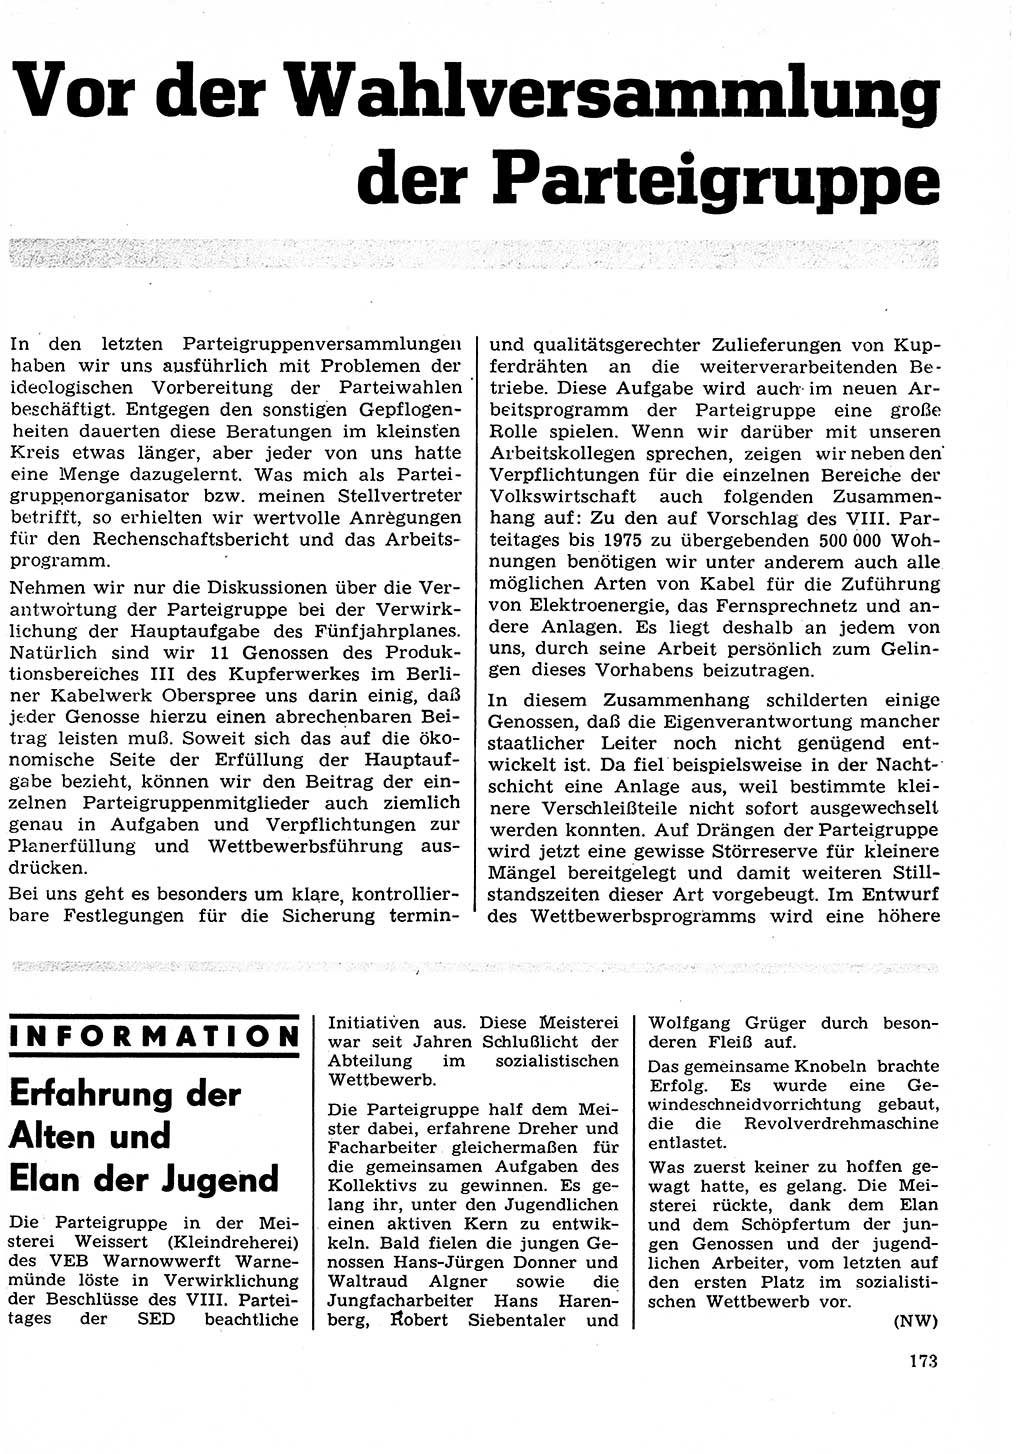 Neuer Weg (NW), Organ des Zentralkomitees (ZK) der SED (Sozialistische Einheitspartei Deutschlands) für Fragen des Parteilebens, 27. Jahrgang [Deutsche Demokratische Republik (DDR)] 1972, Seite 173 (NW ZK SED DDR 1972, S. 173)